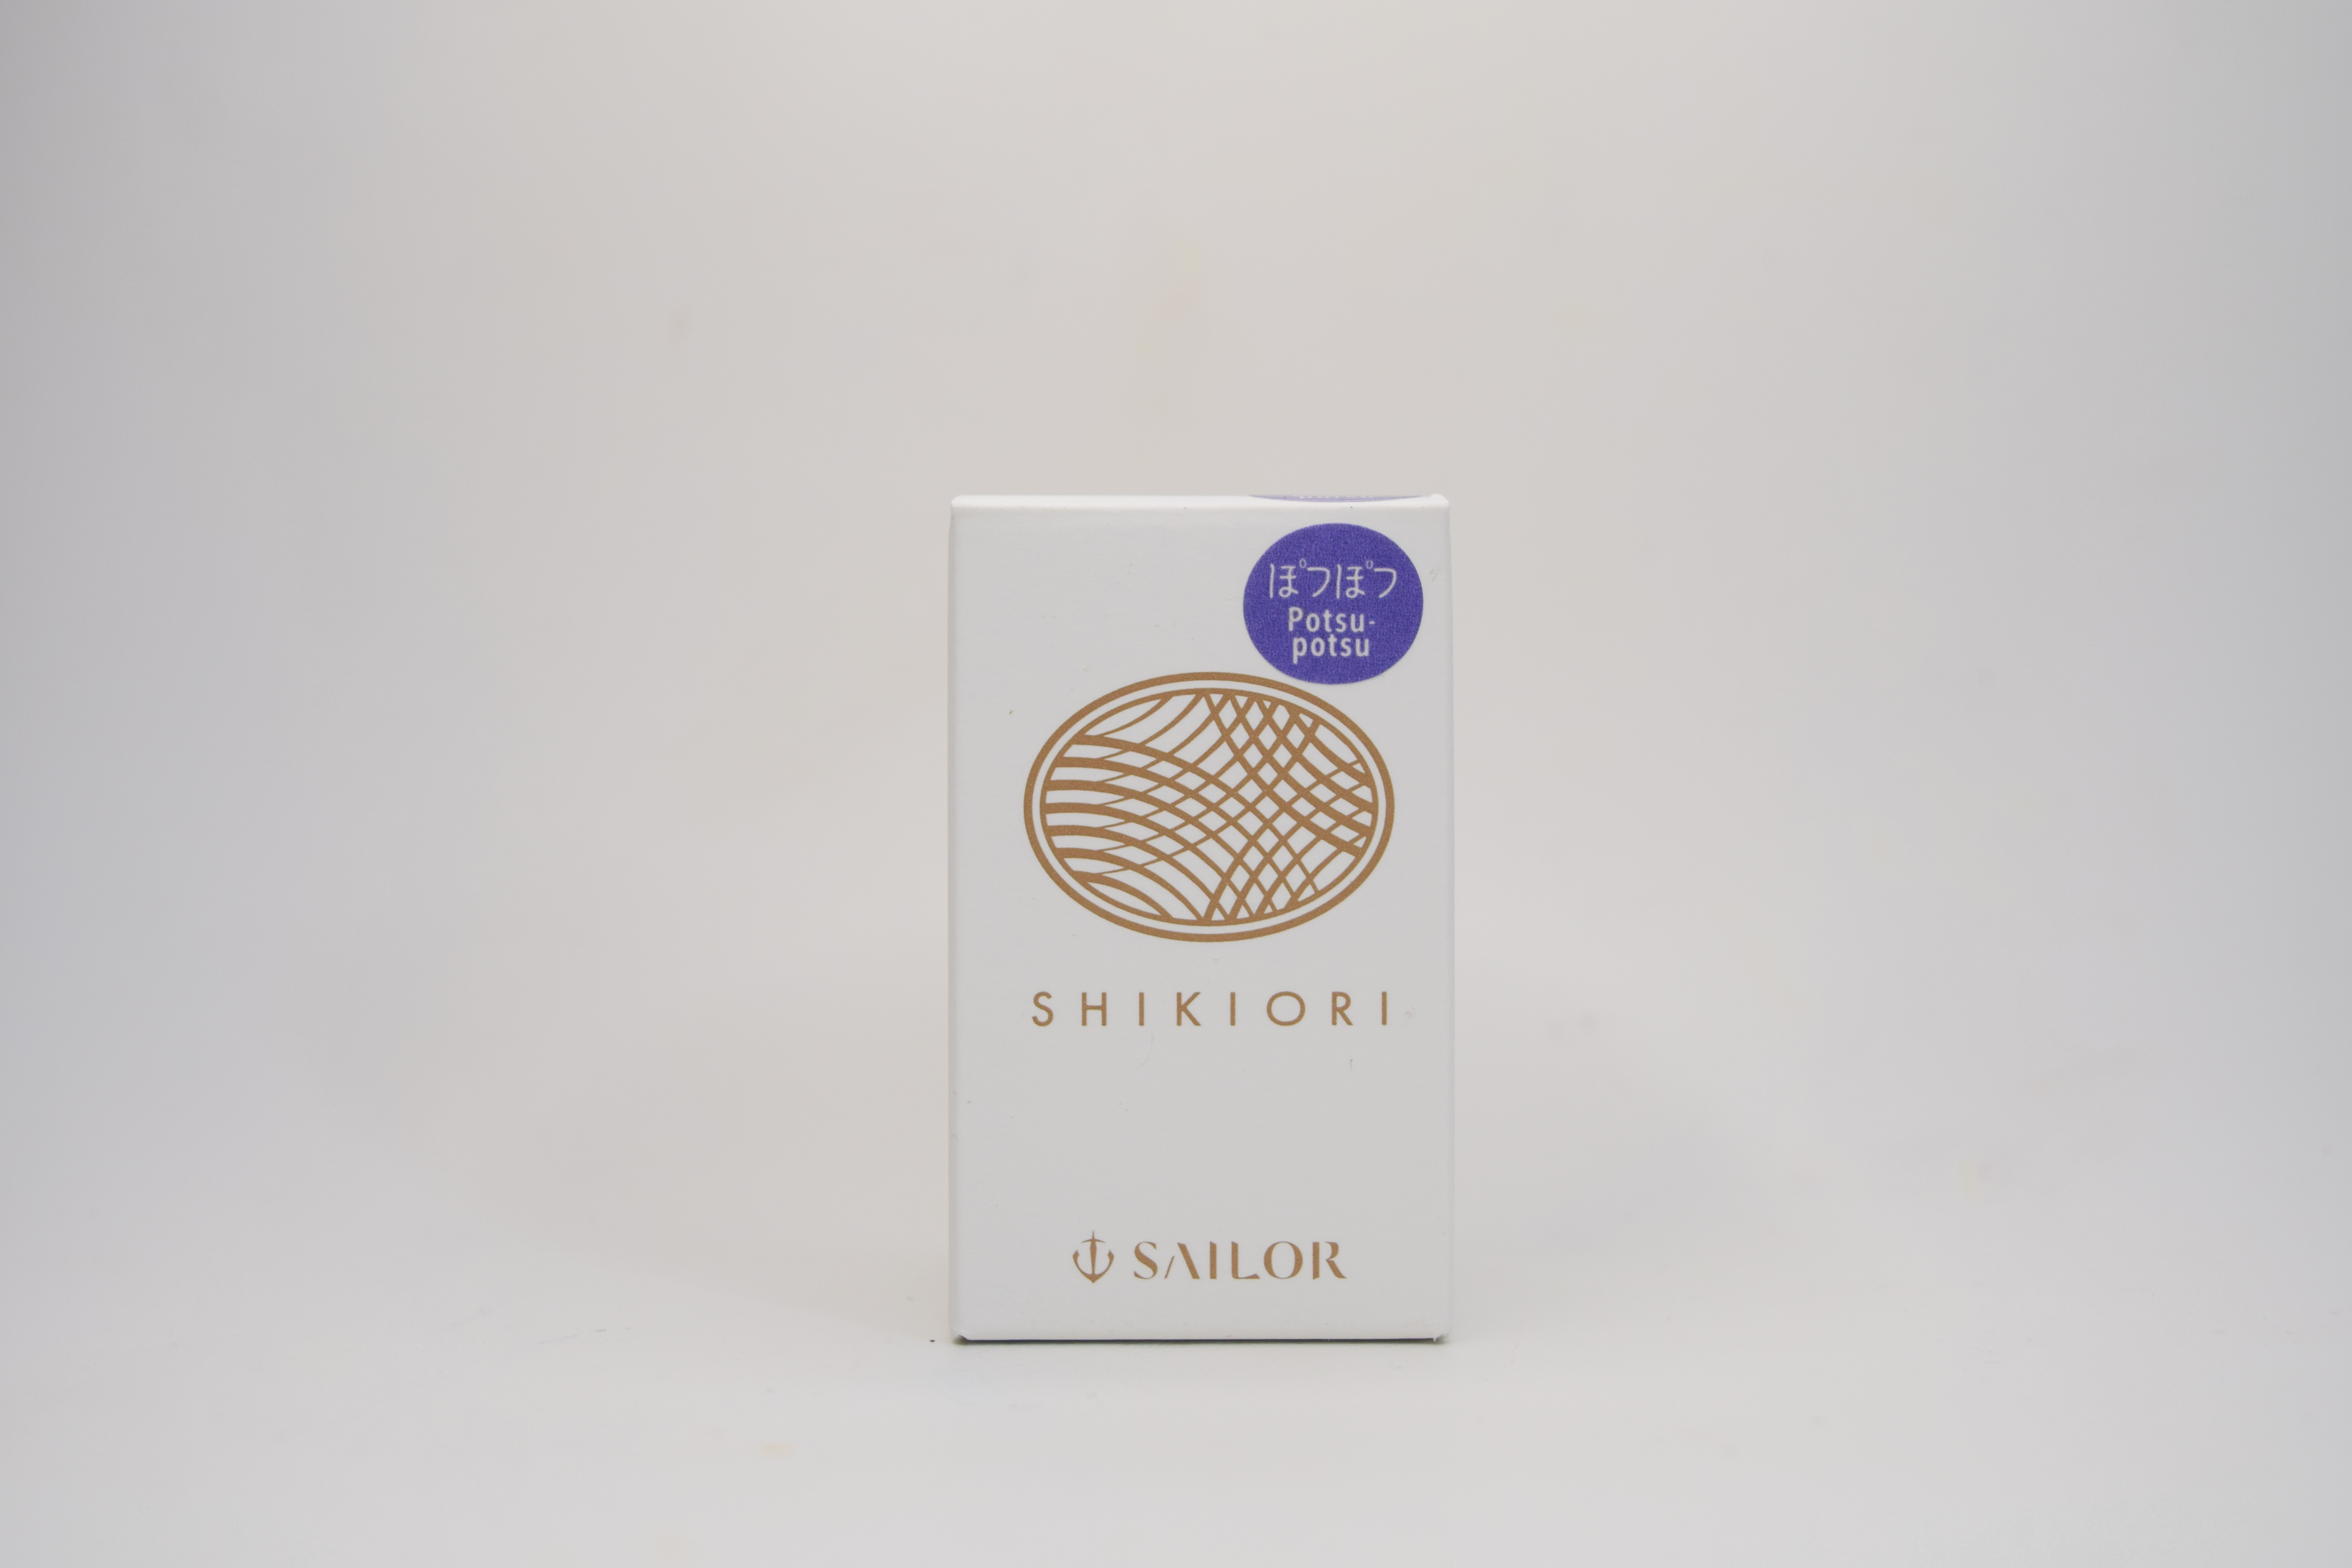 Sailor Shikiori  "Sound of Rain" Potsupotsu 20ml  